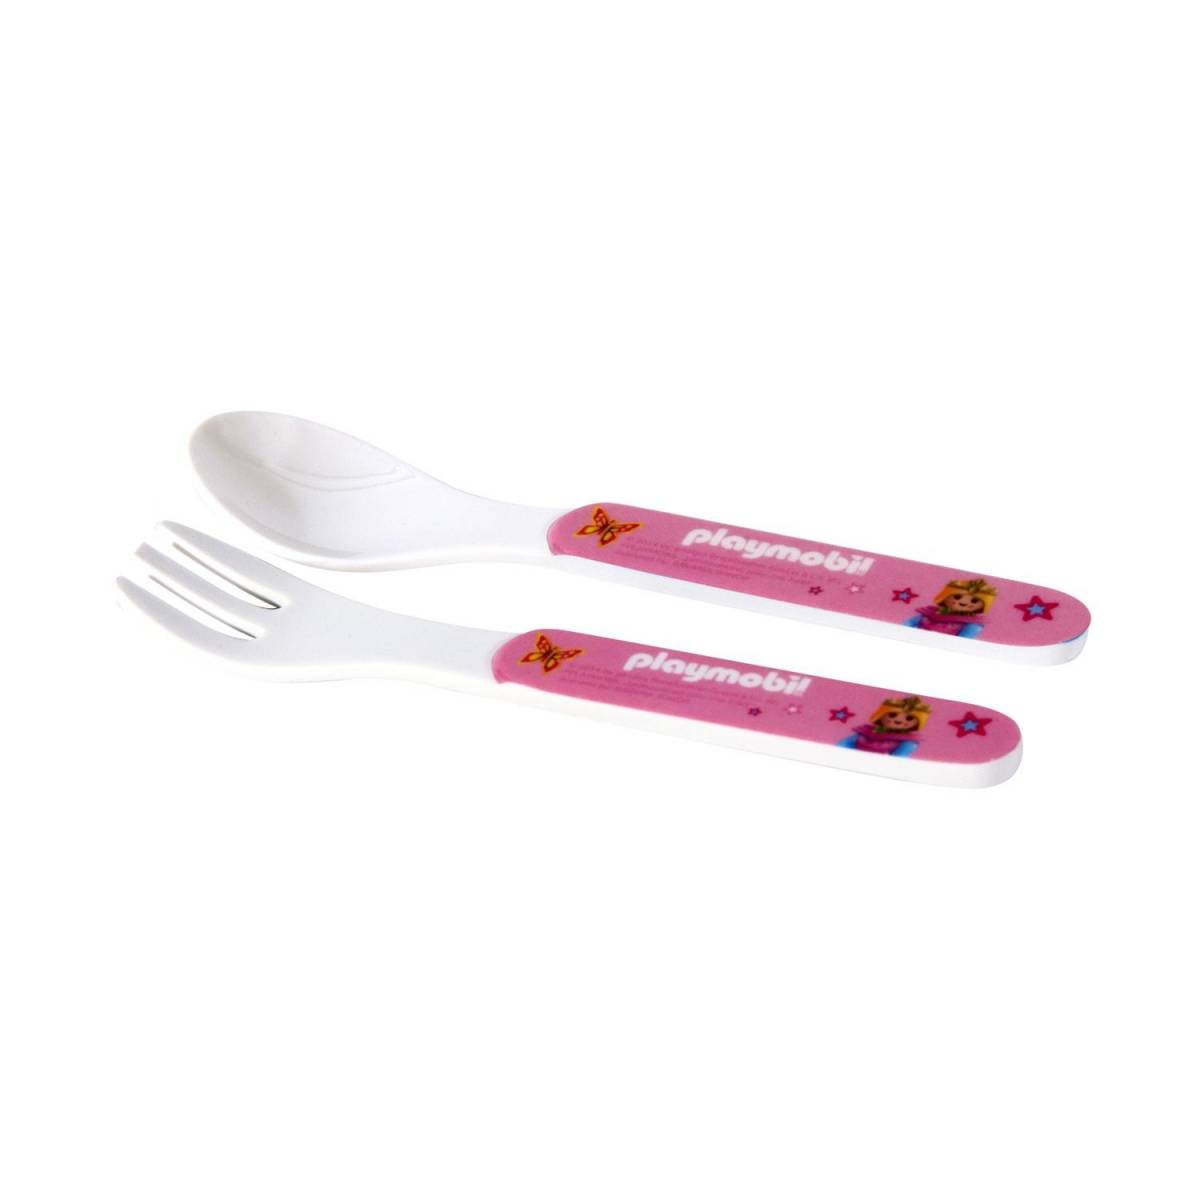 Cuillère et fourchette Playmobil - rose